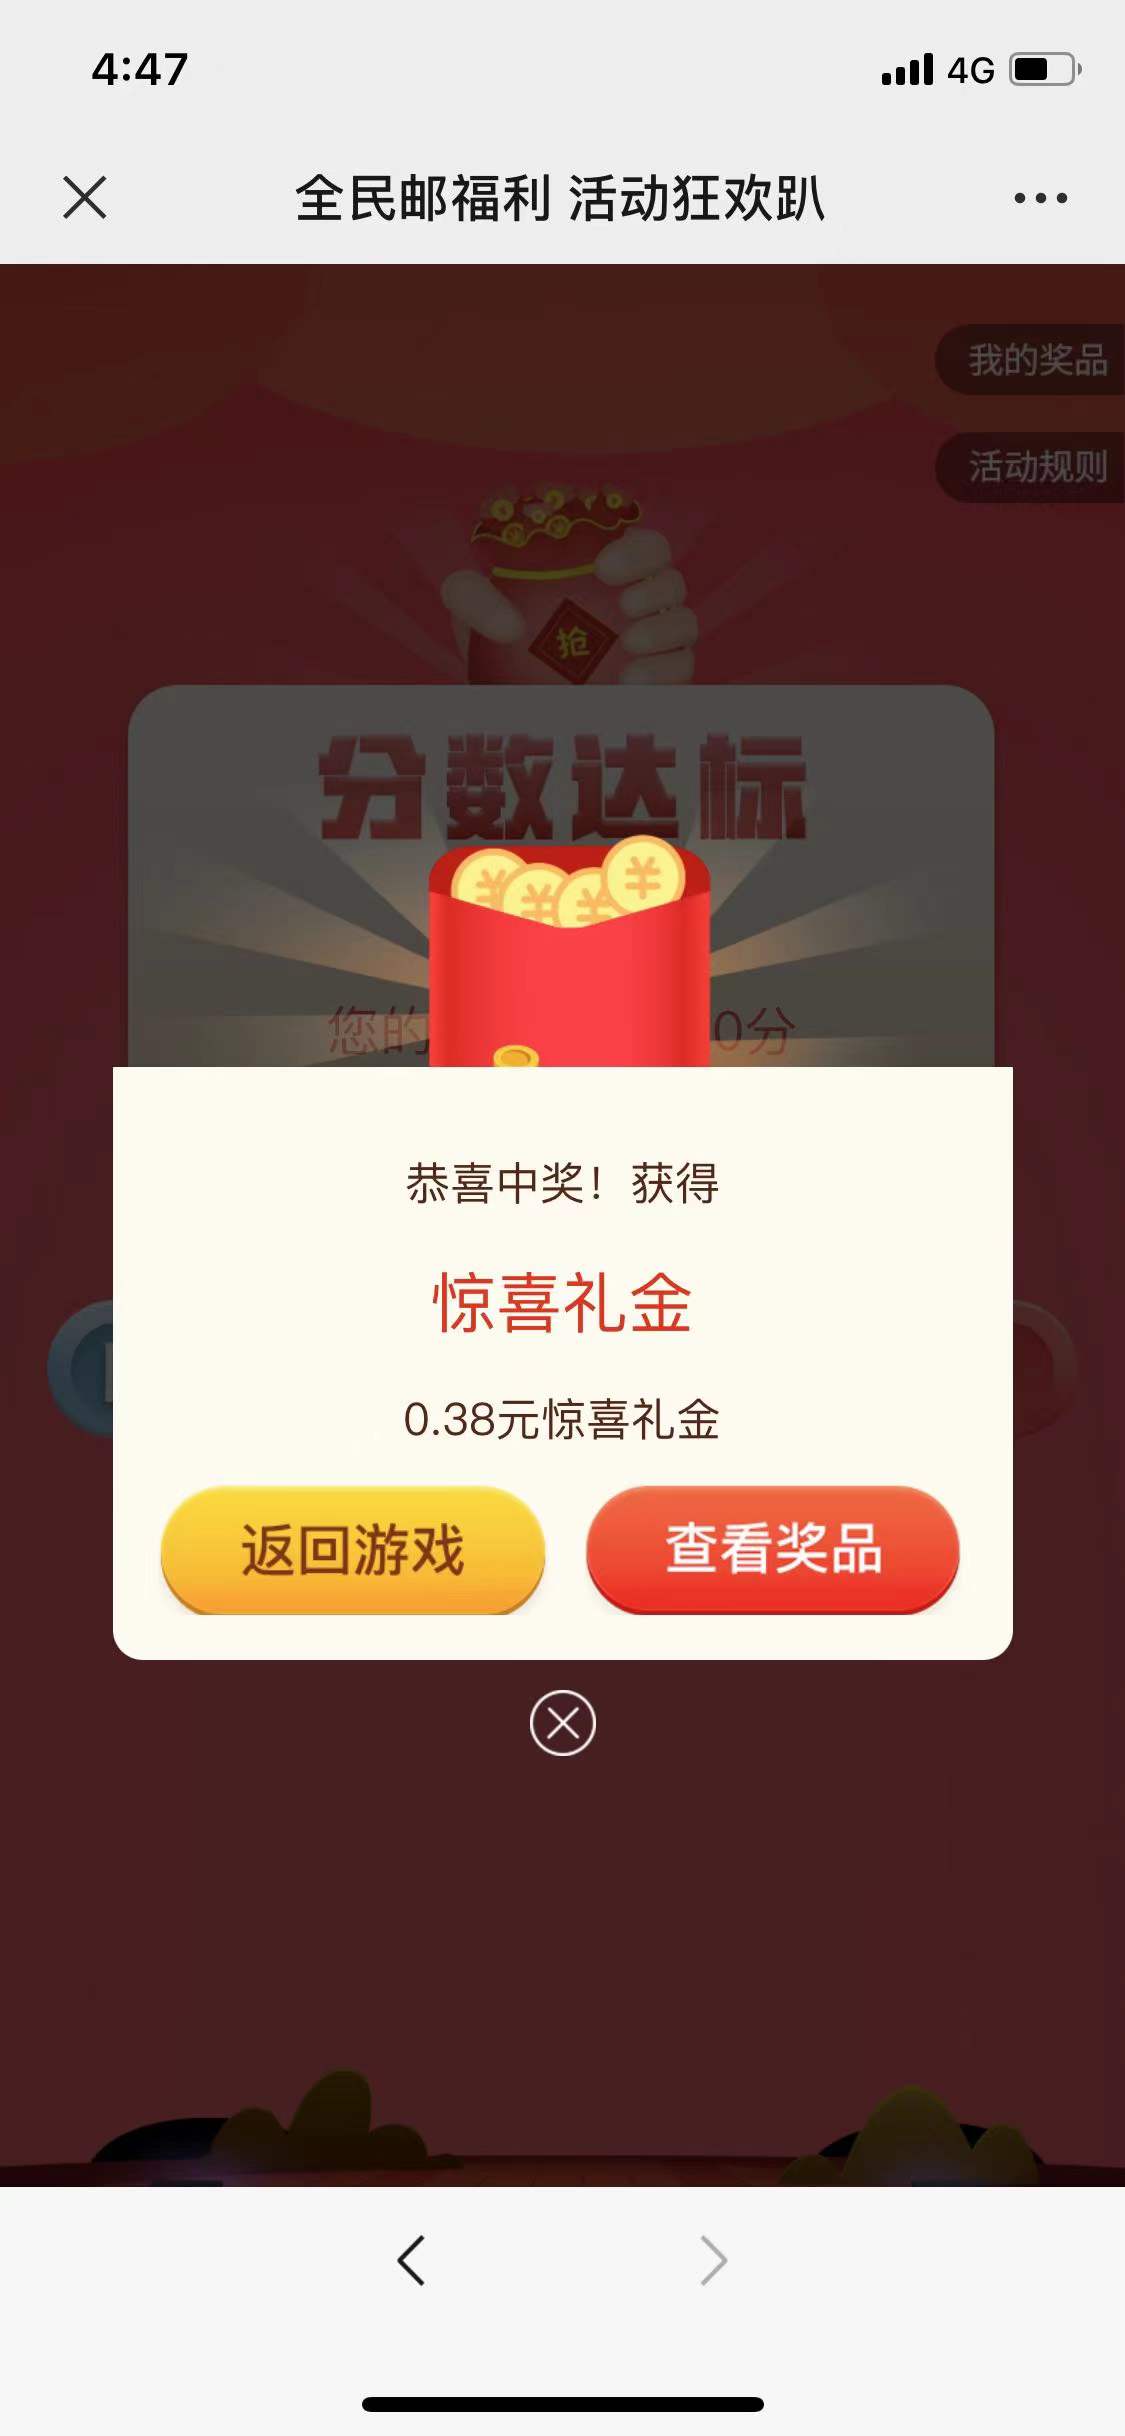 中国邮政玩游戏抽红包， 亲测基本必中0.38元